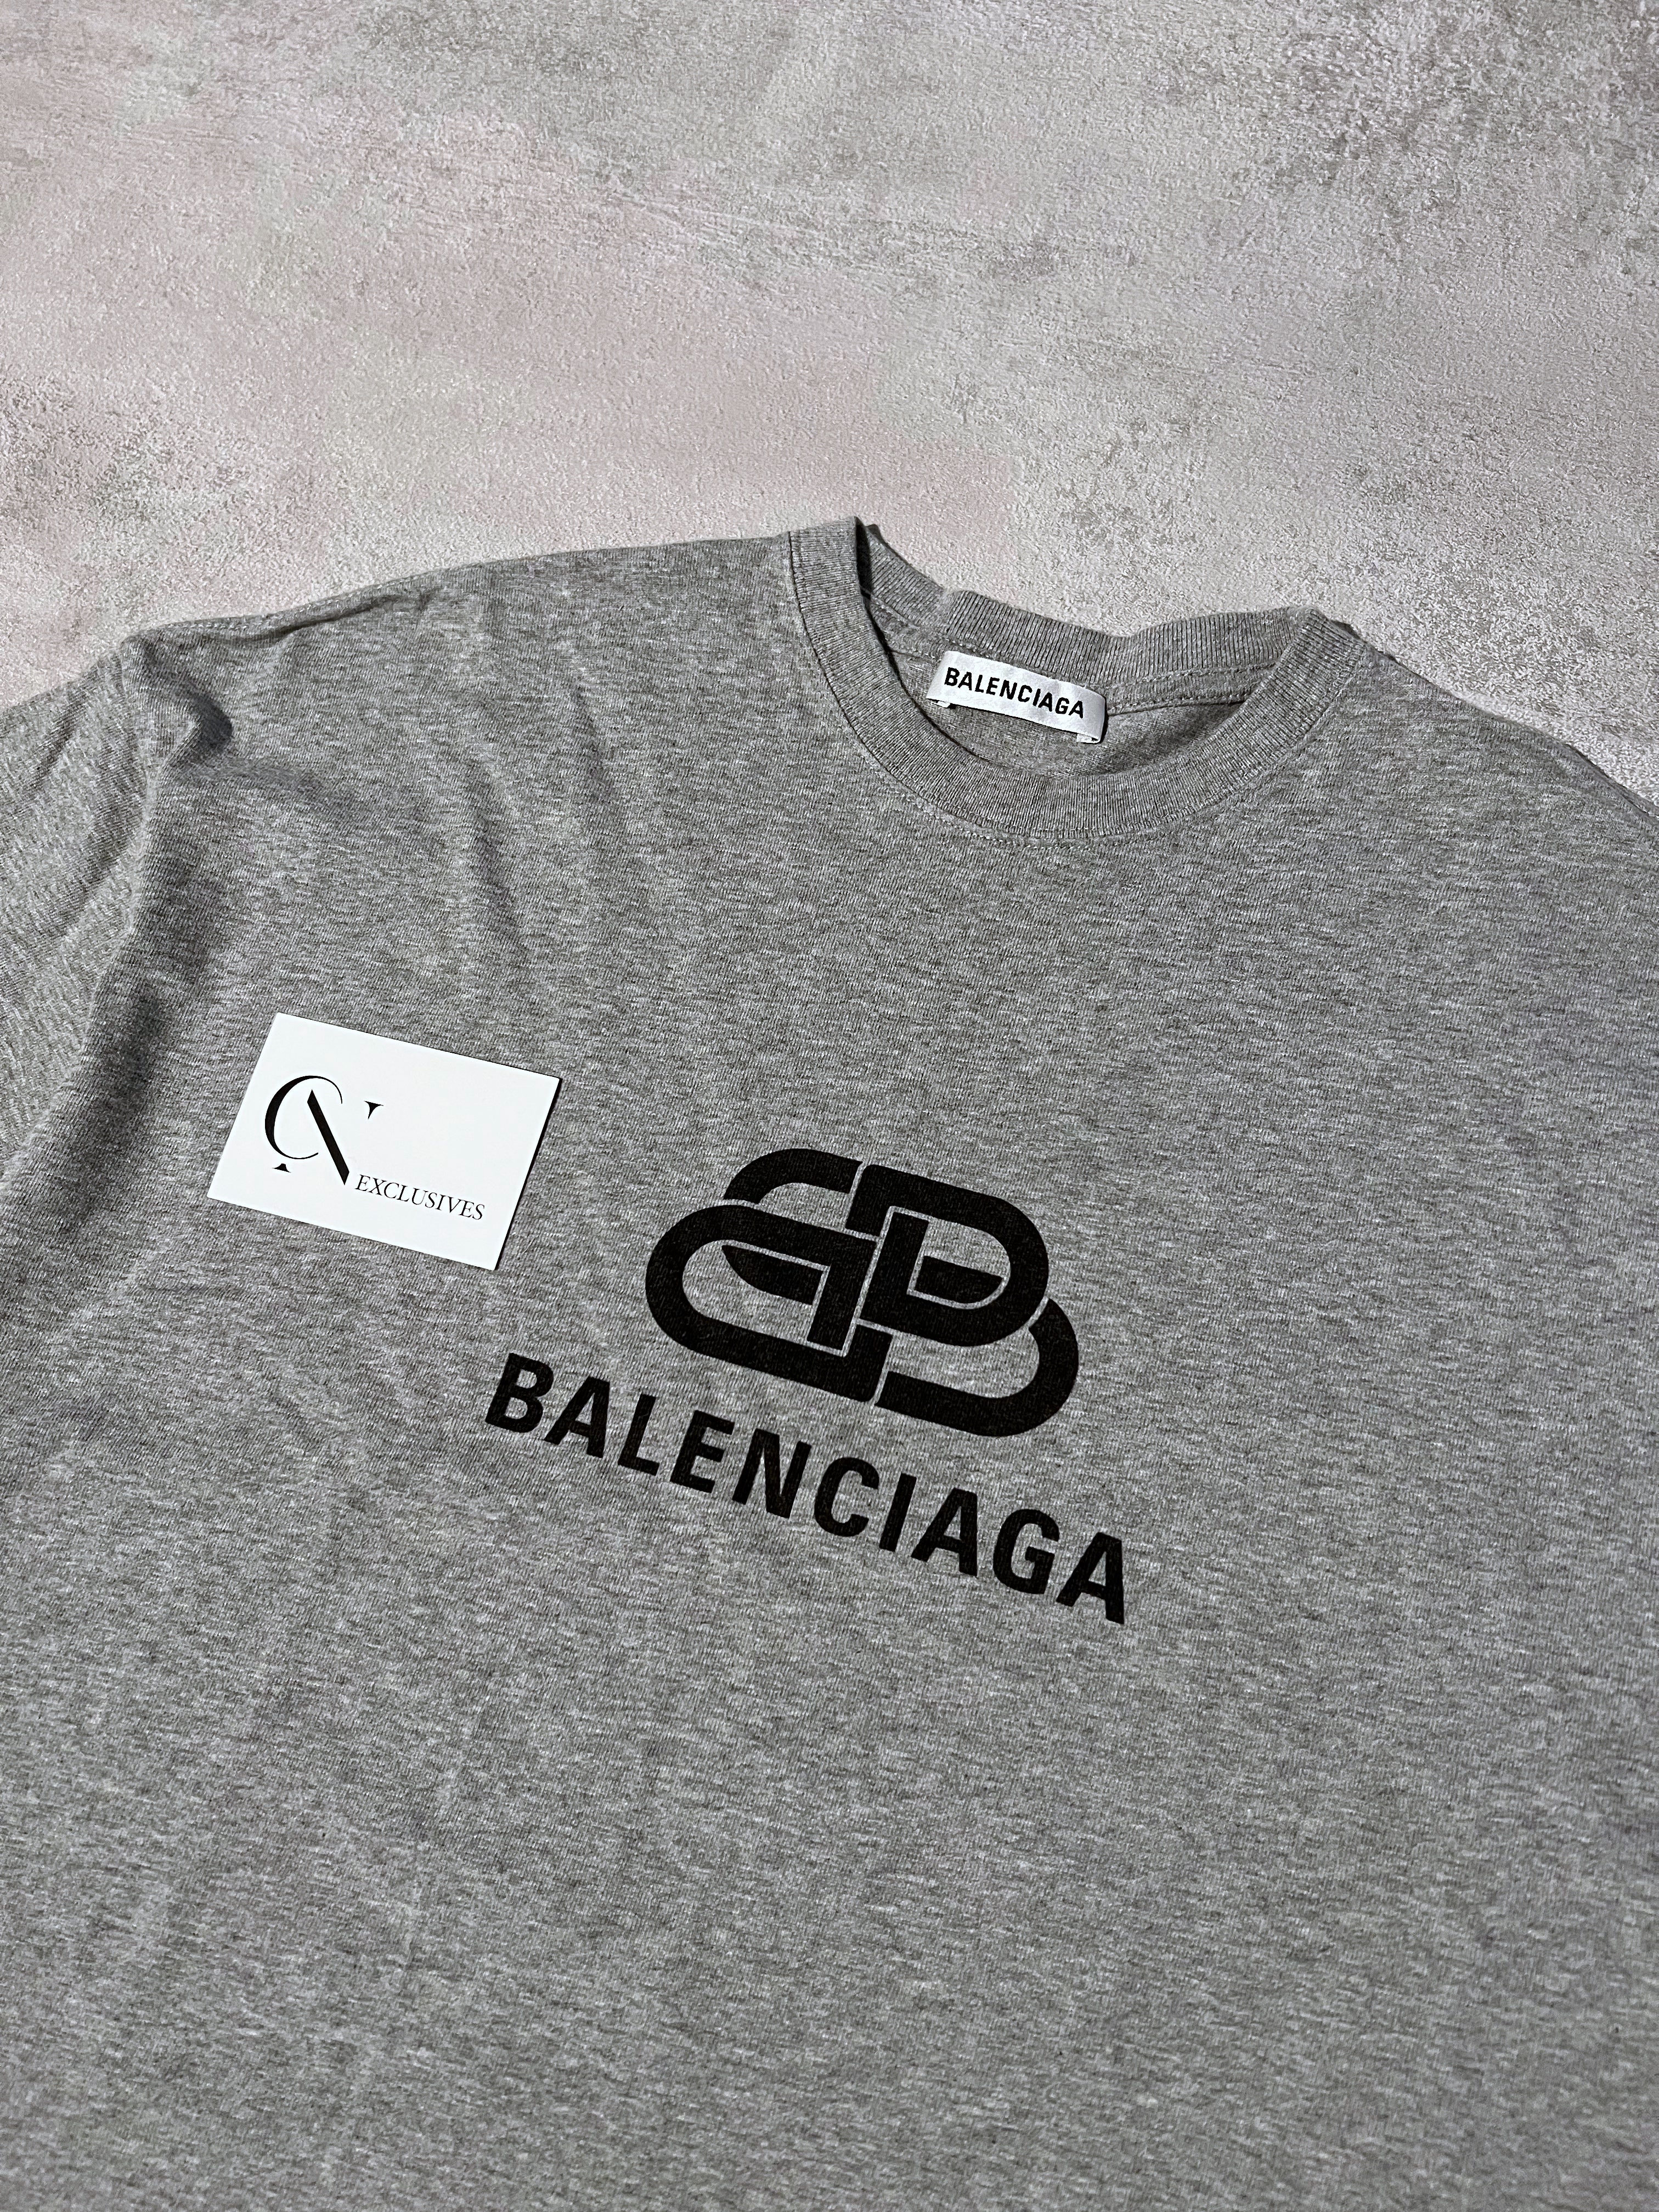 Balenciaga Interlock T-Shirt